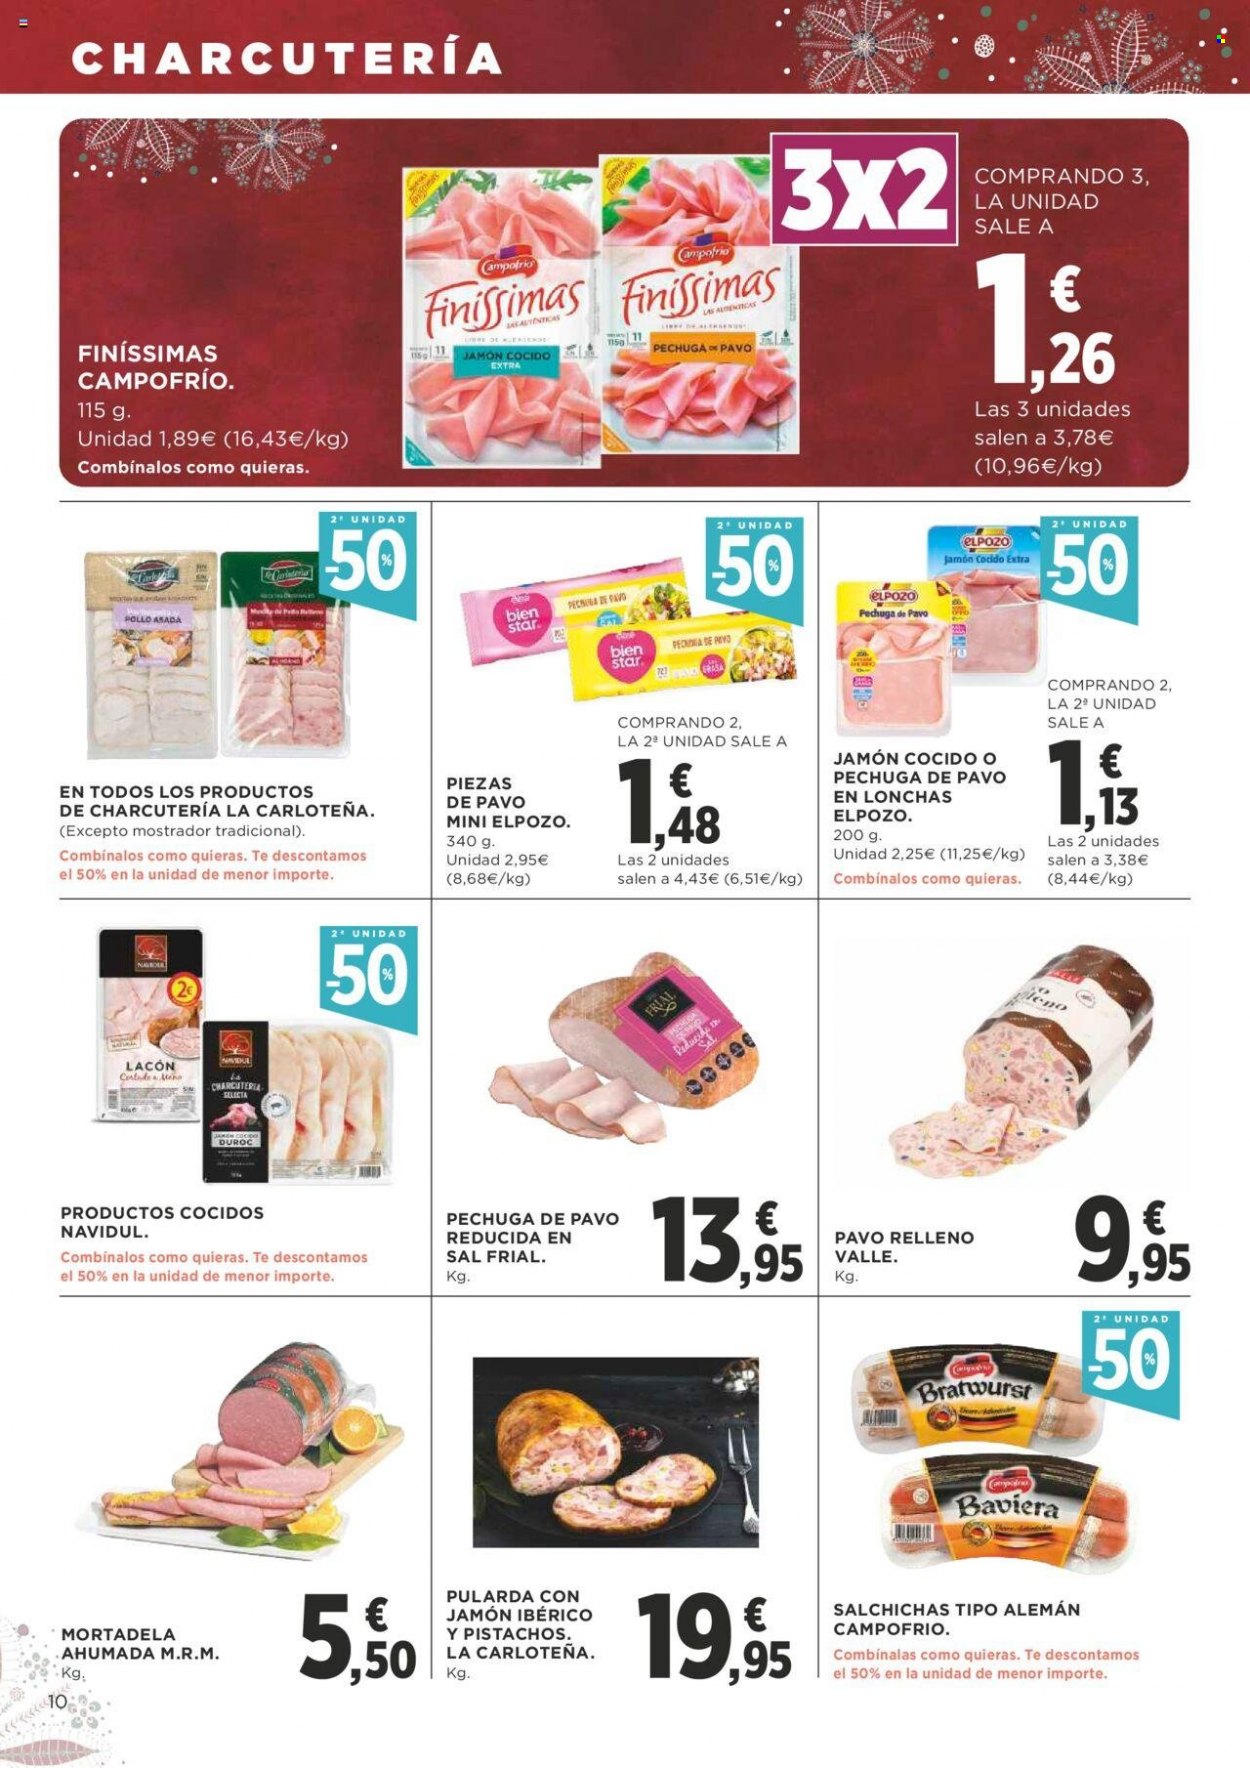 thumbnail - Folleto actual Supercor supermercados - 18/11/21 - 01/12/21 - Ventas - pavo, pechuga de pavo, pollo, Campofrío, mortadela, salchicha, lacón, sal. Página 10.